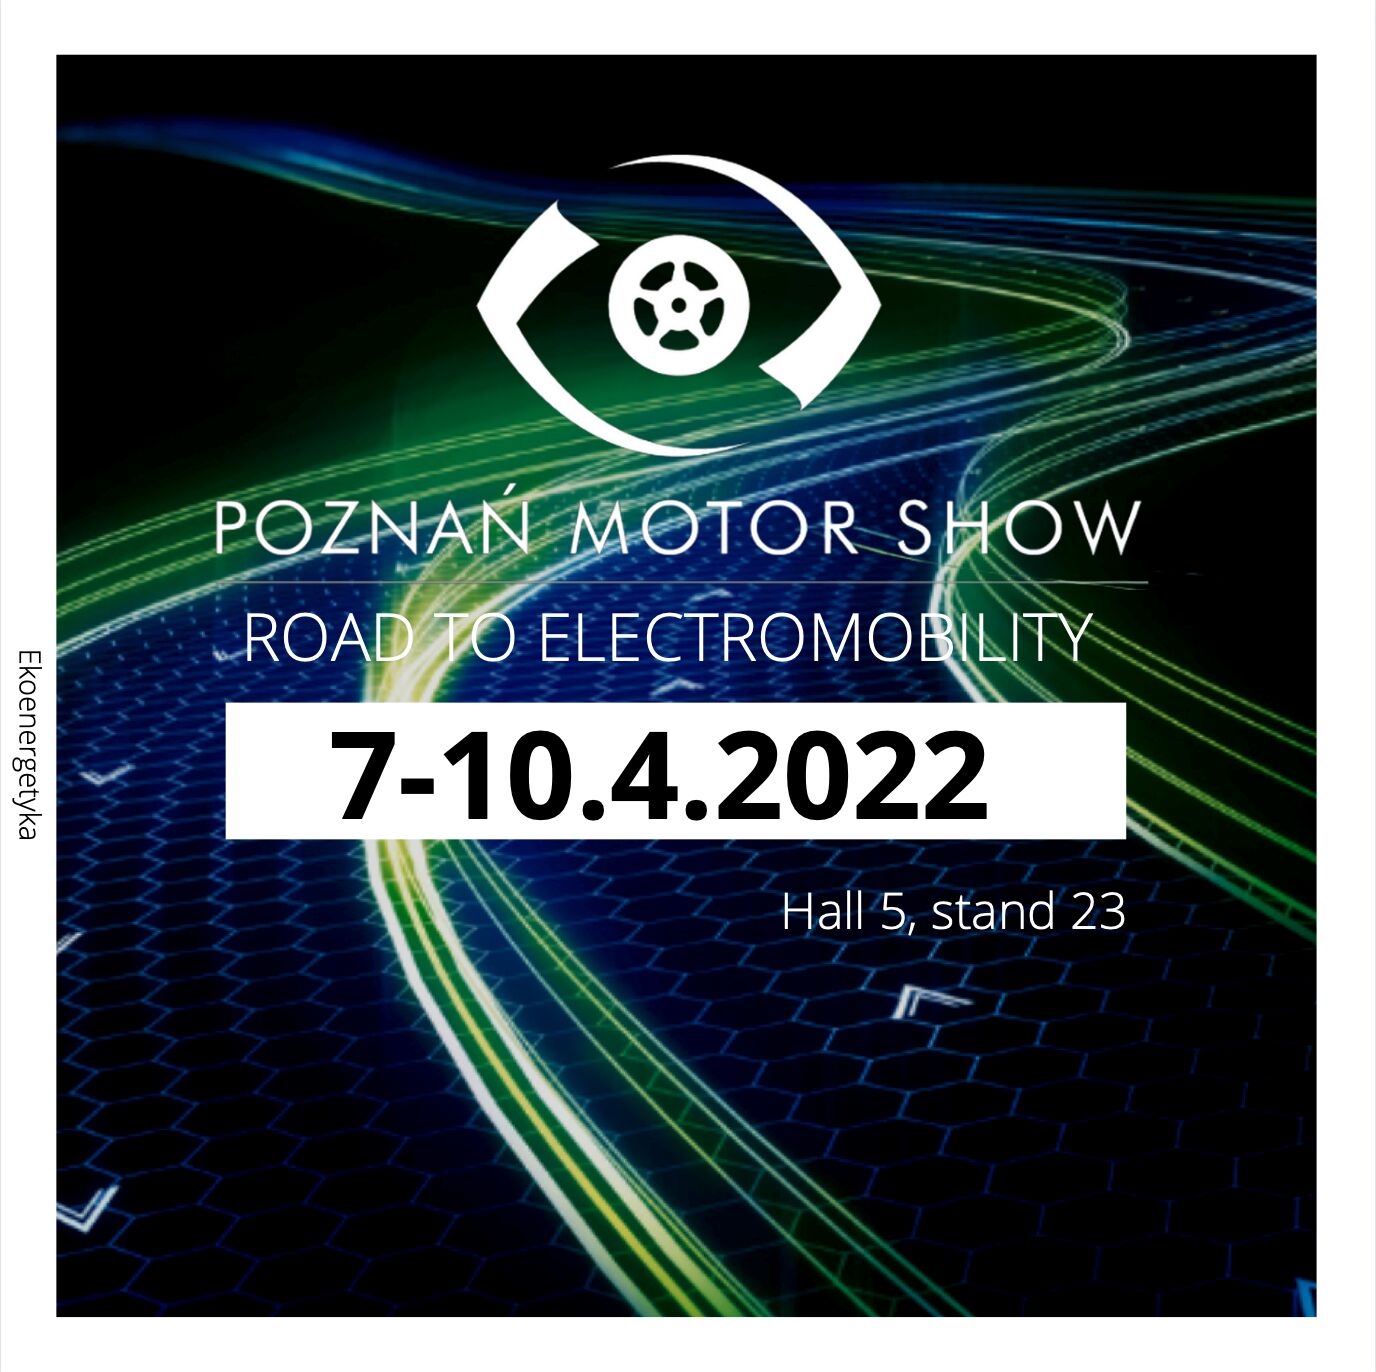 ekoenergetyka poznań motor show 2022, Ekoenergetyka na&nbsp;Poznań Motor Show 2022, Ekoenergetyka-Polska S.A.